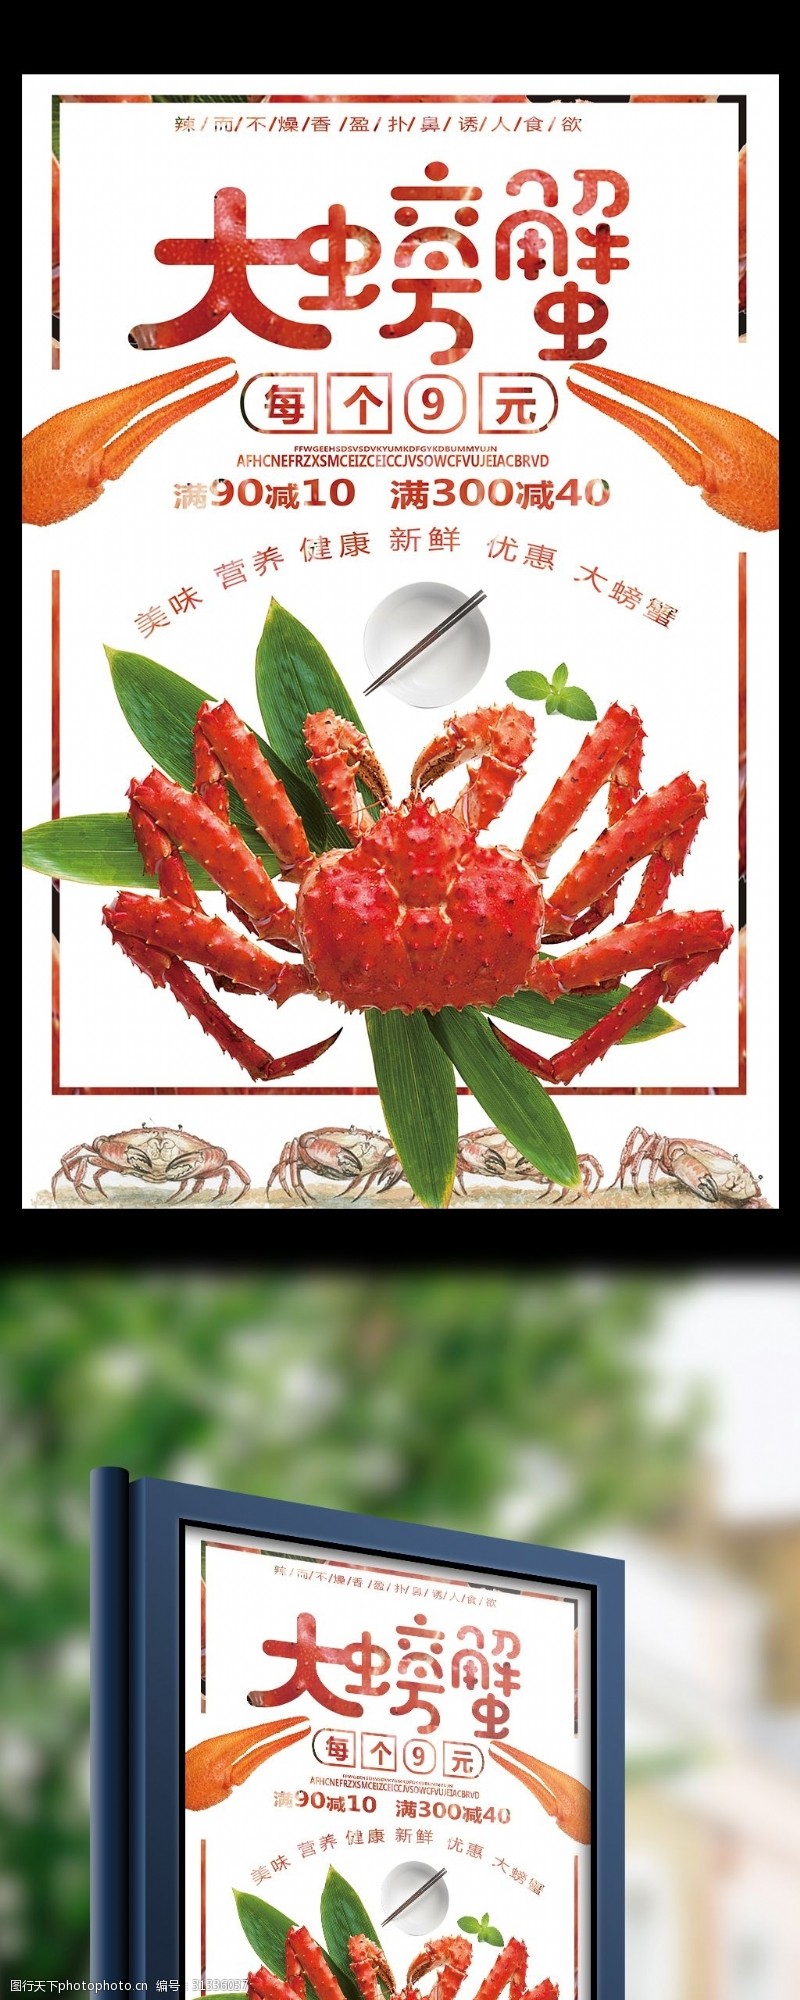 大闸蟹促销大螃蟹海鲜美食促销海报